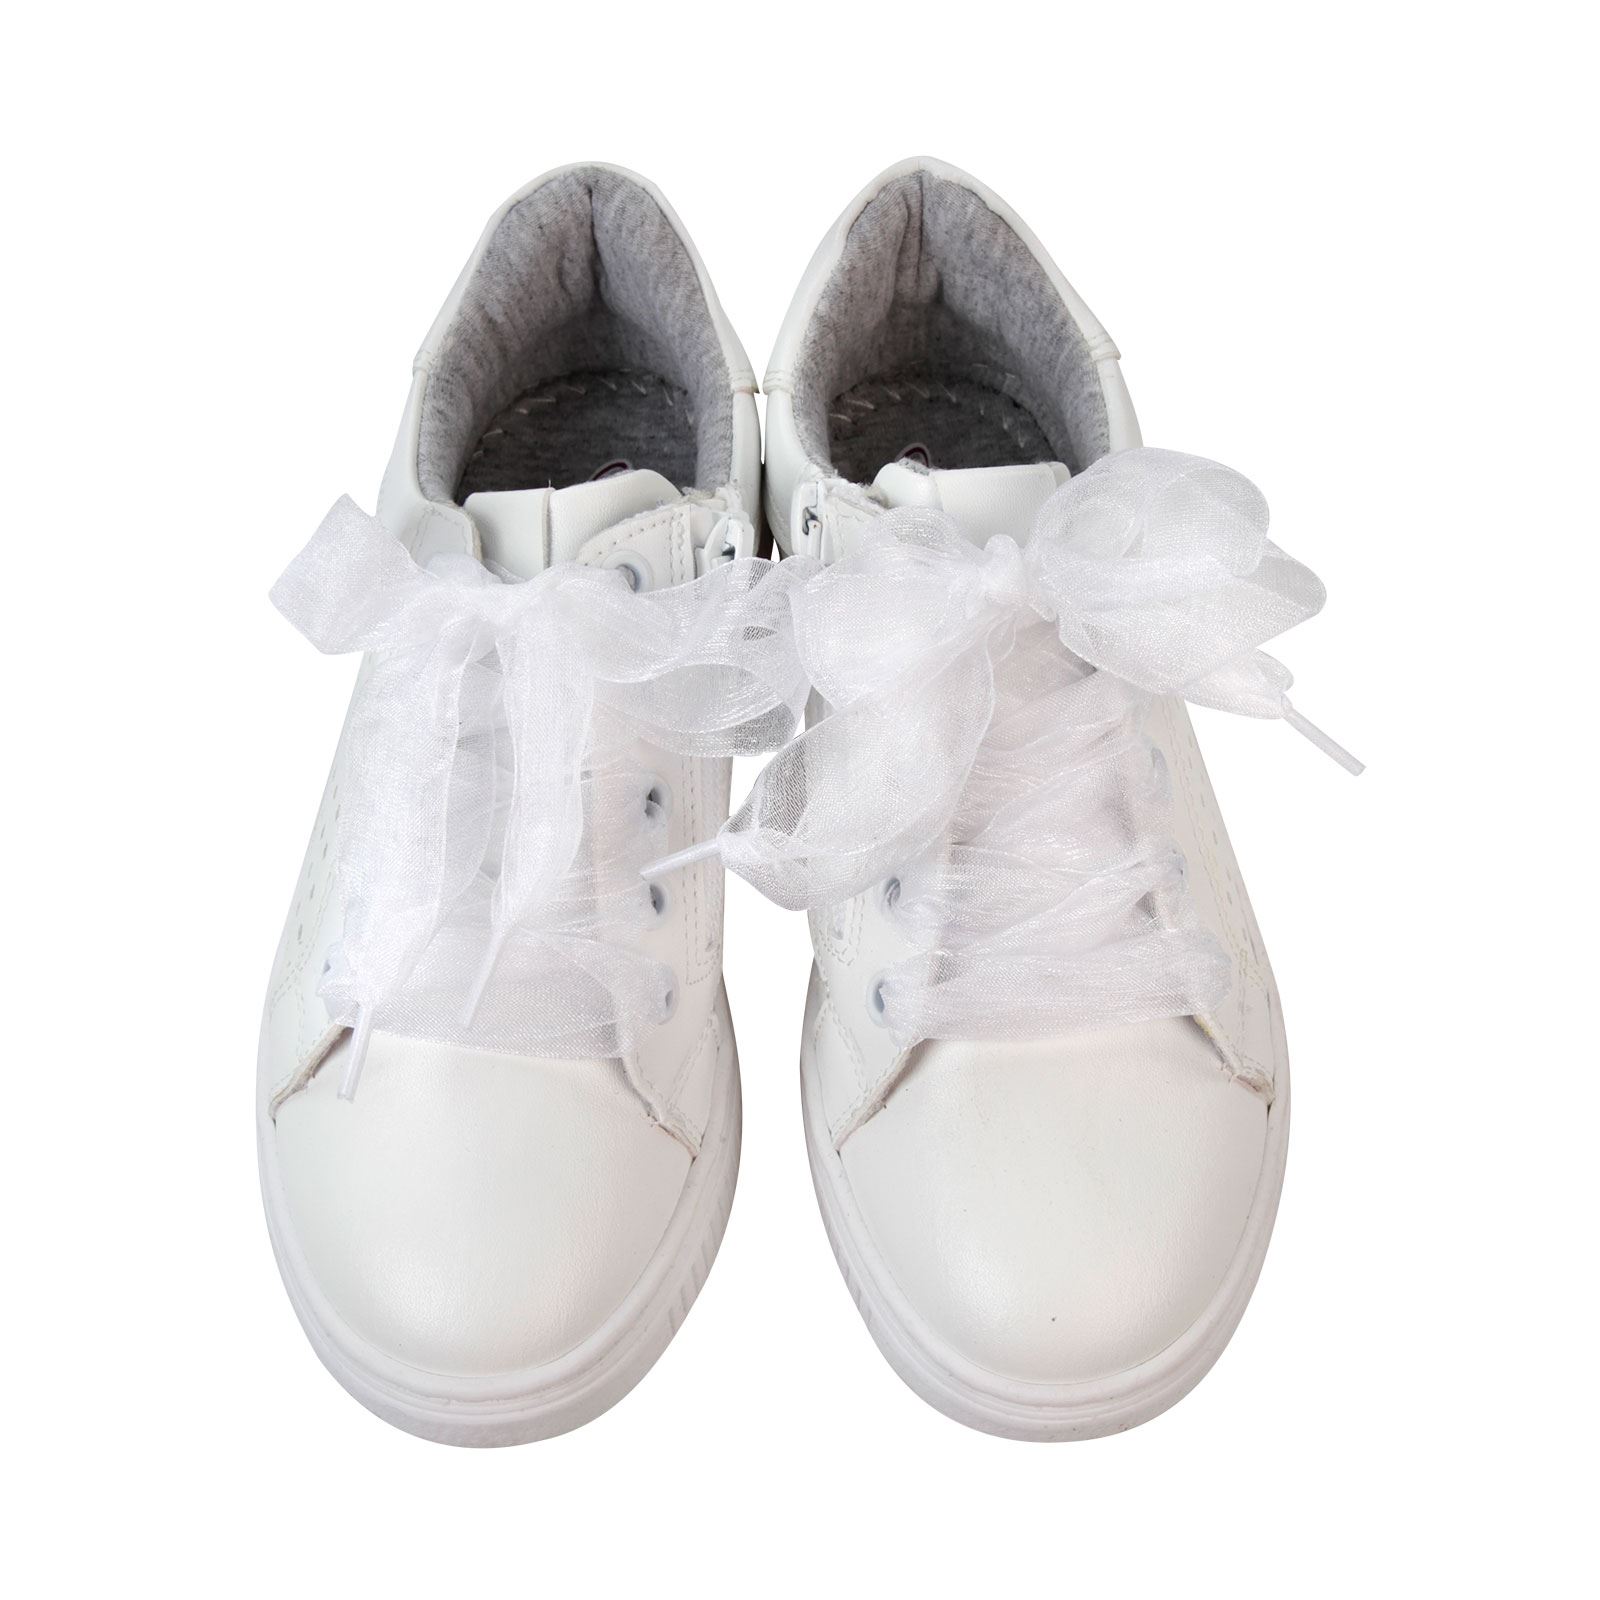 Missiva Kız Çocuk Spor Ayakkabı 31-35 Numara Beyaz